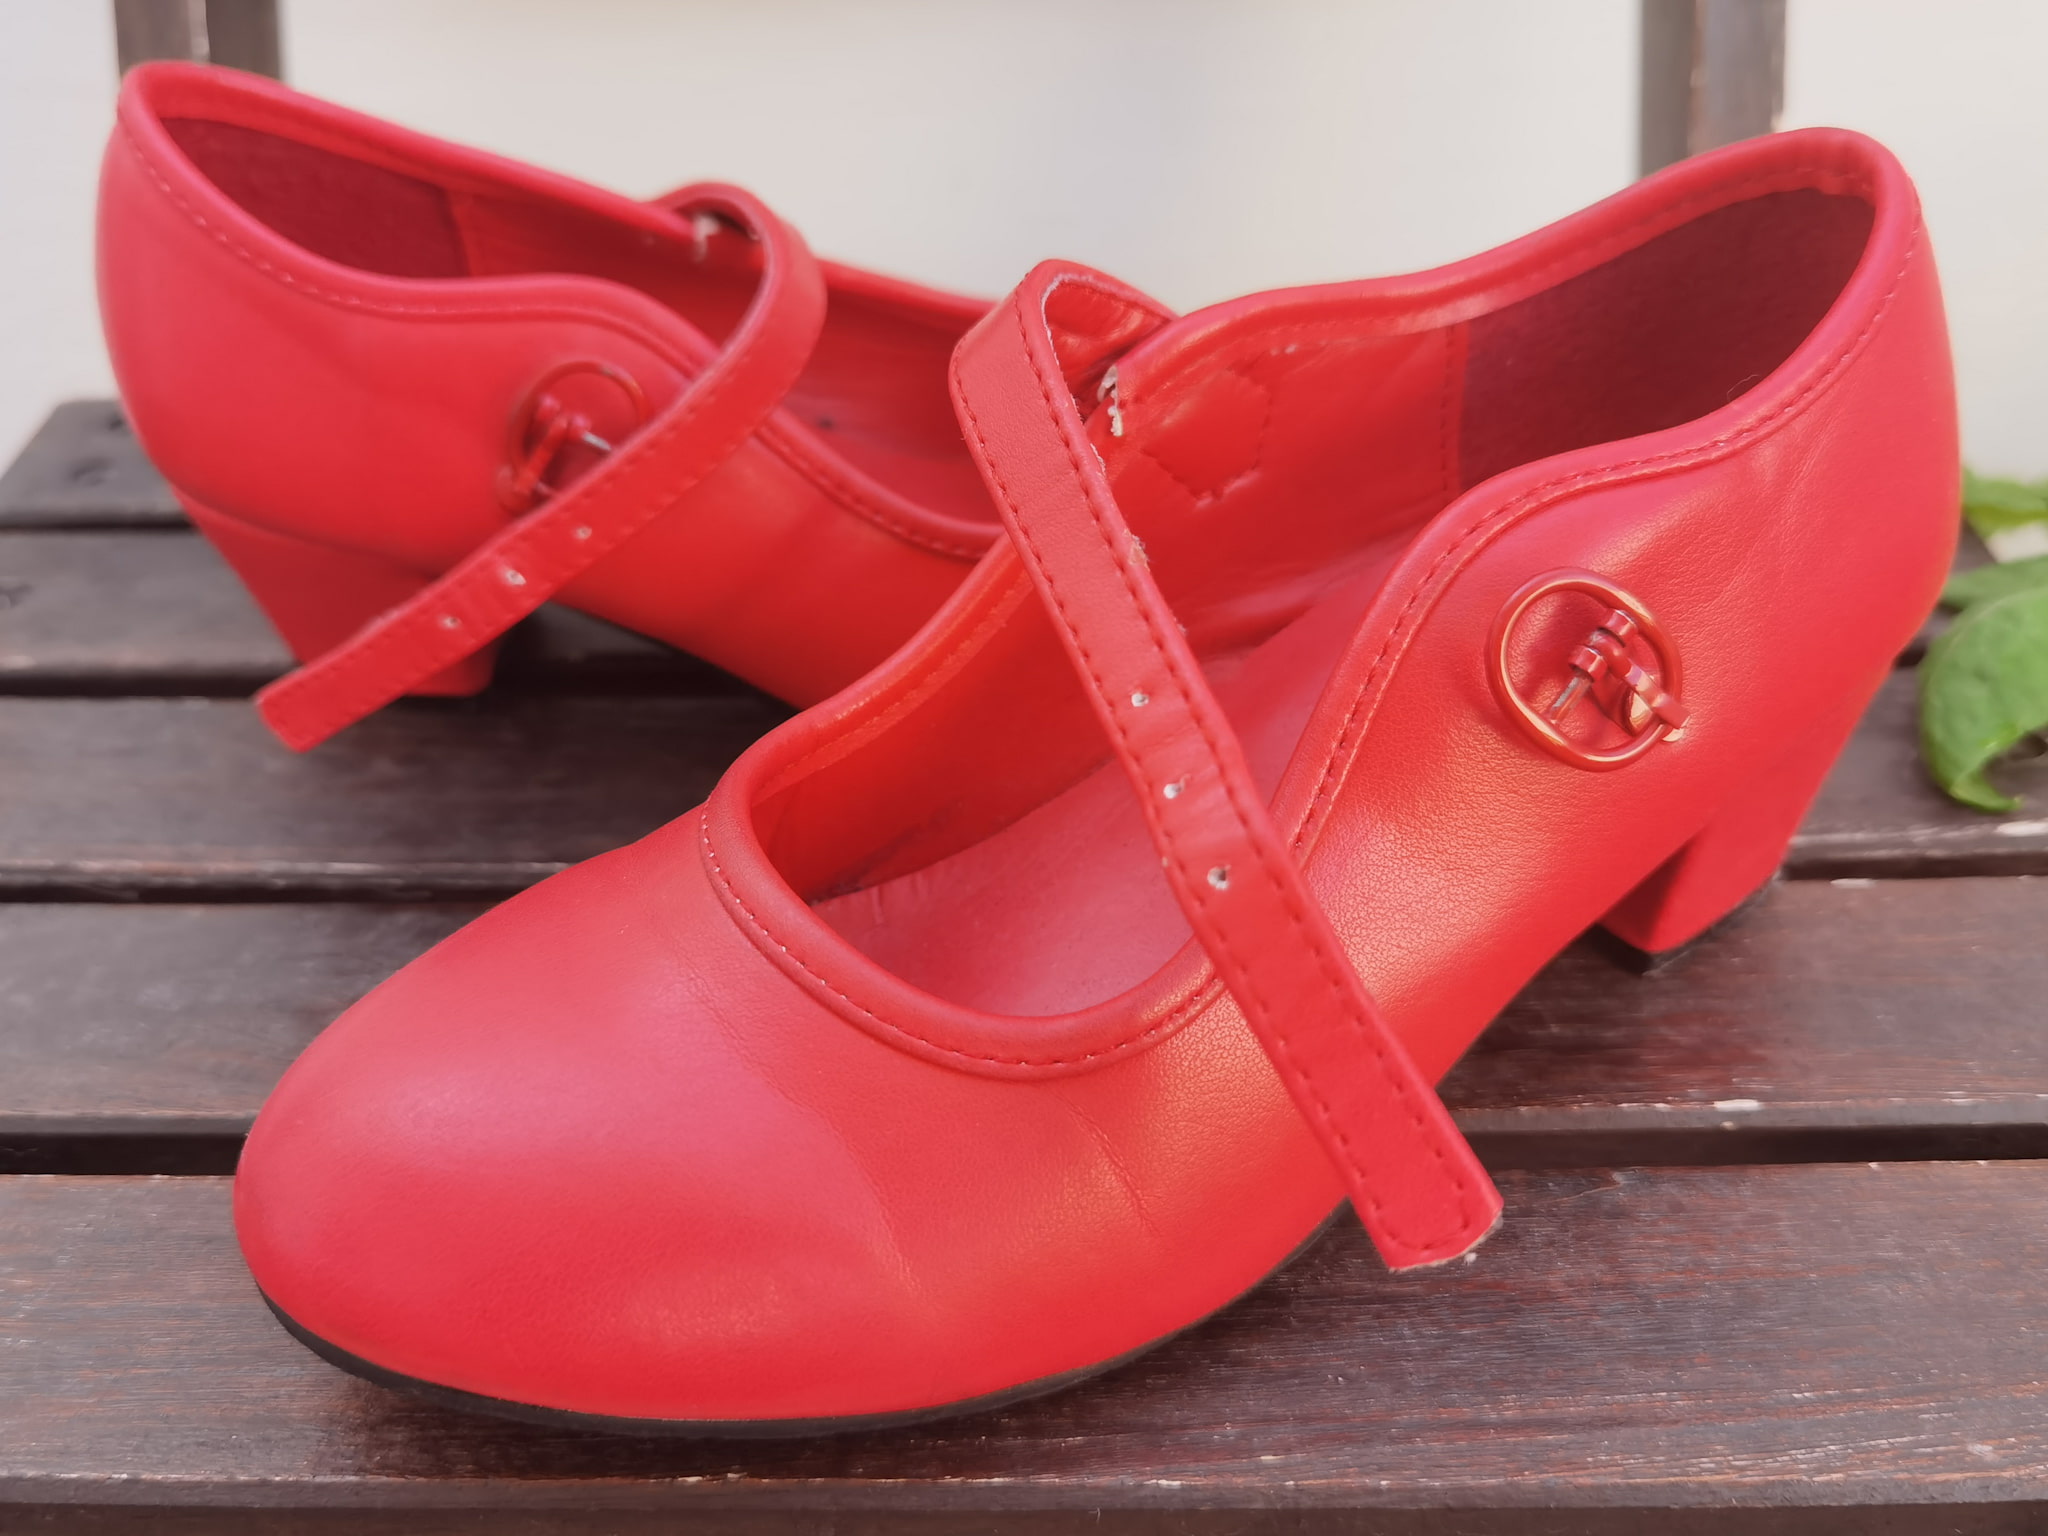 Chaussures de flamenco